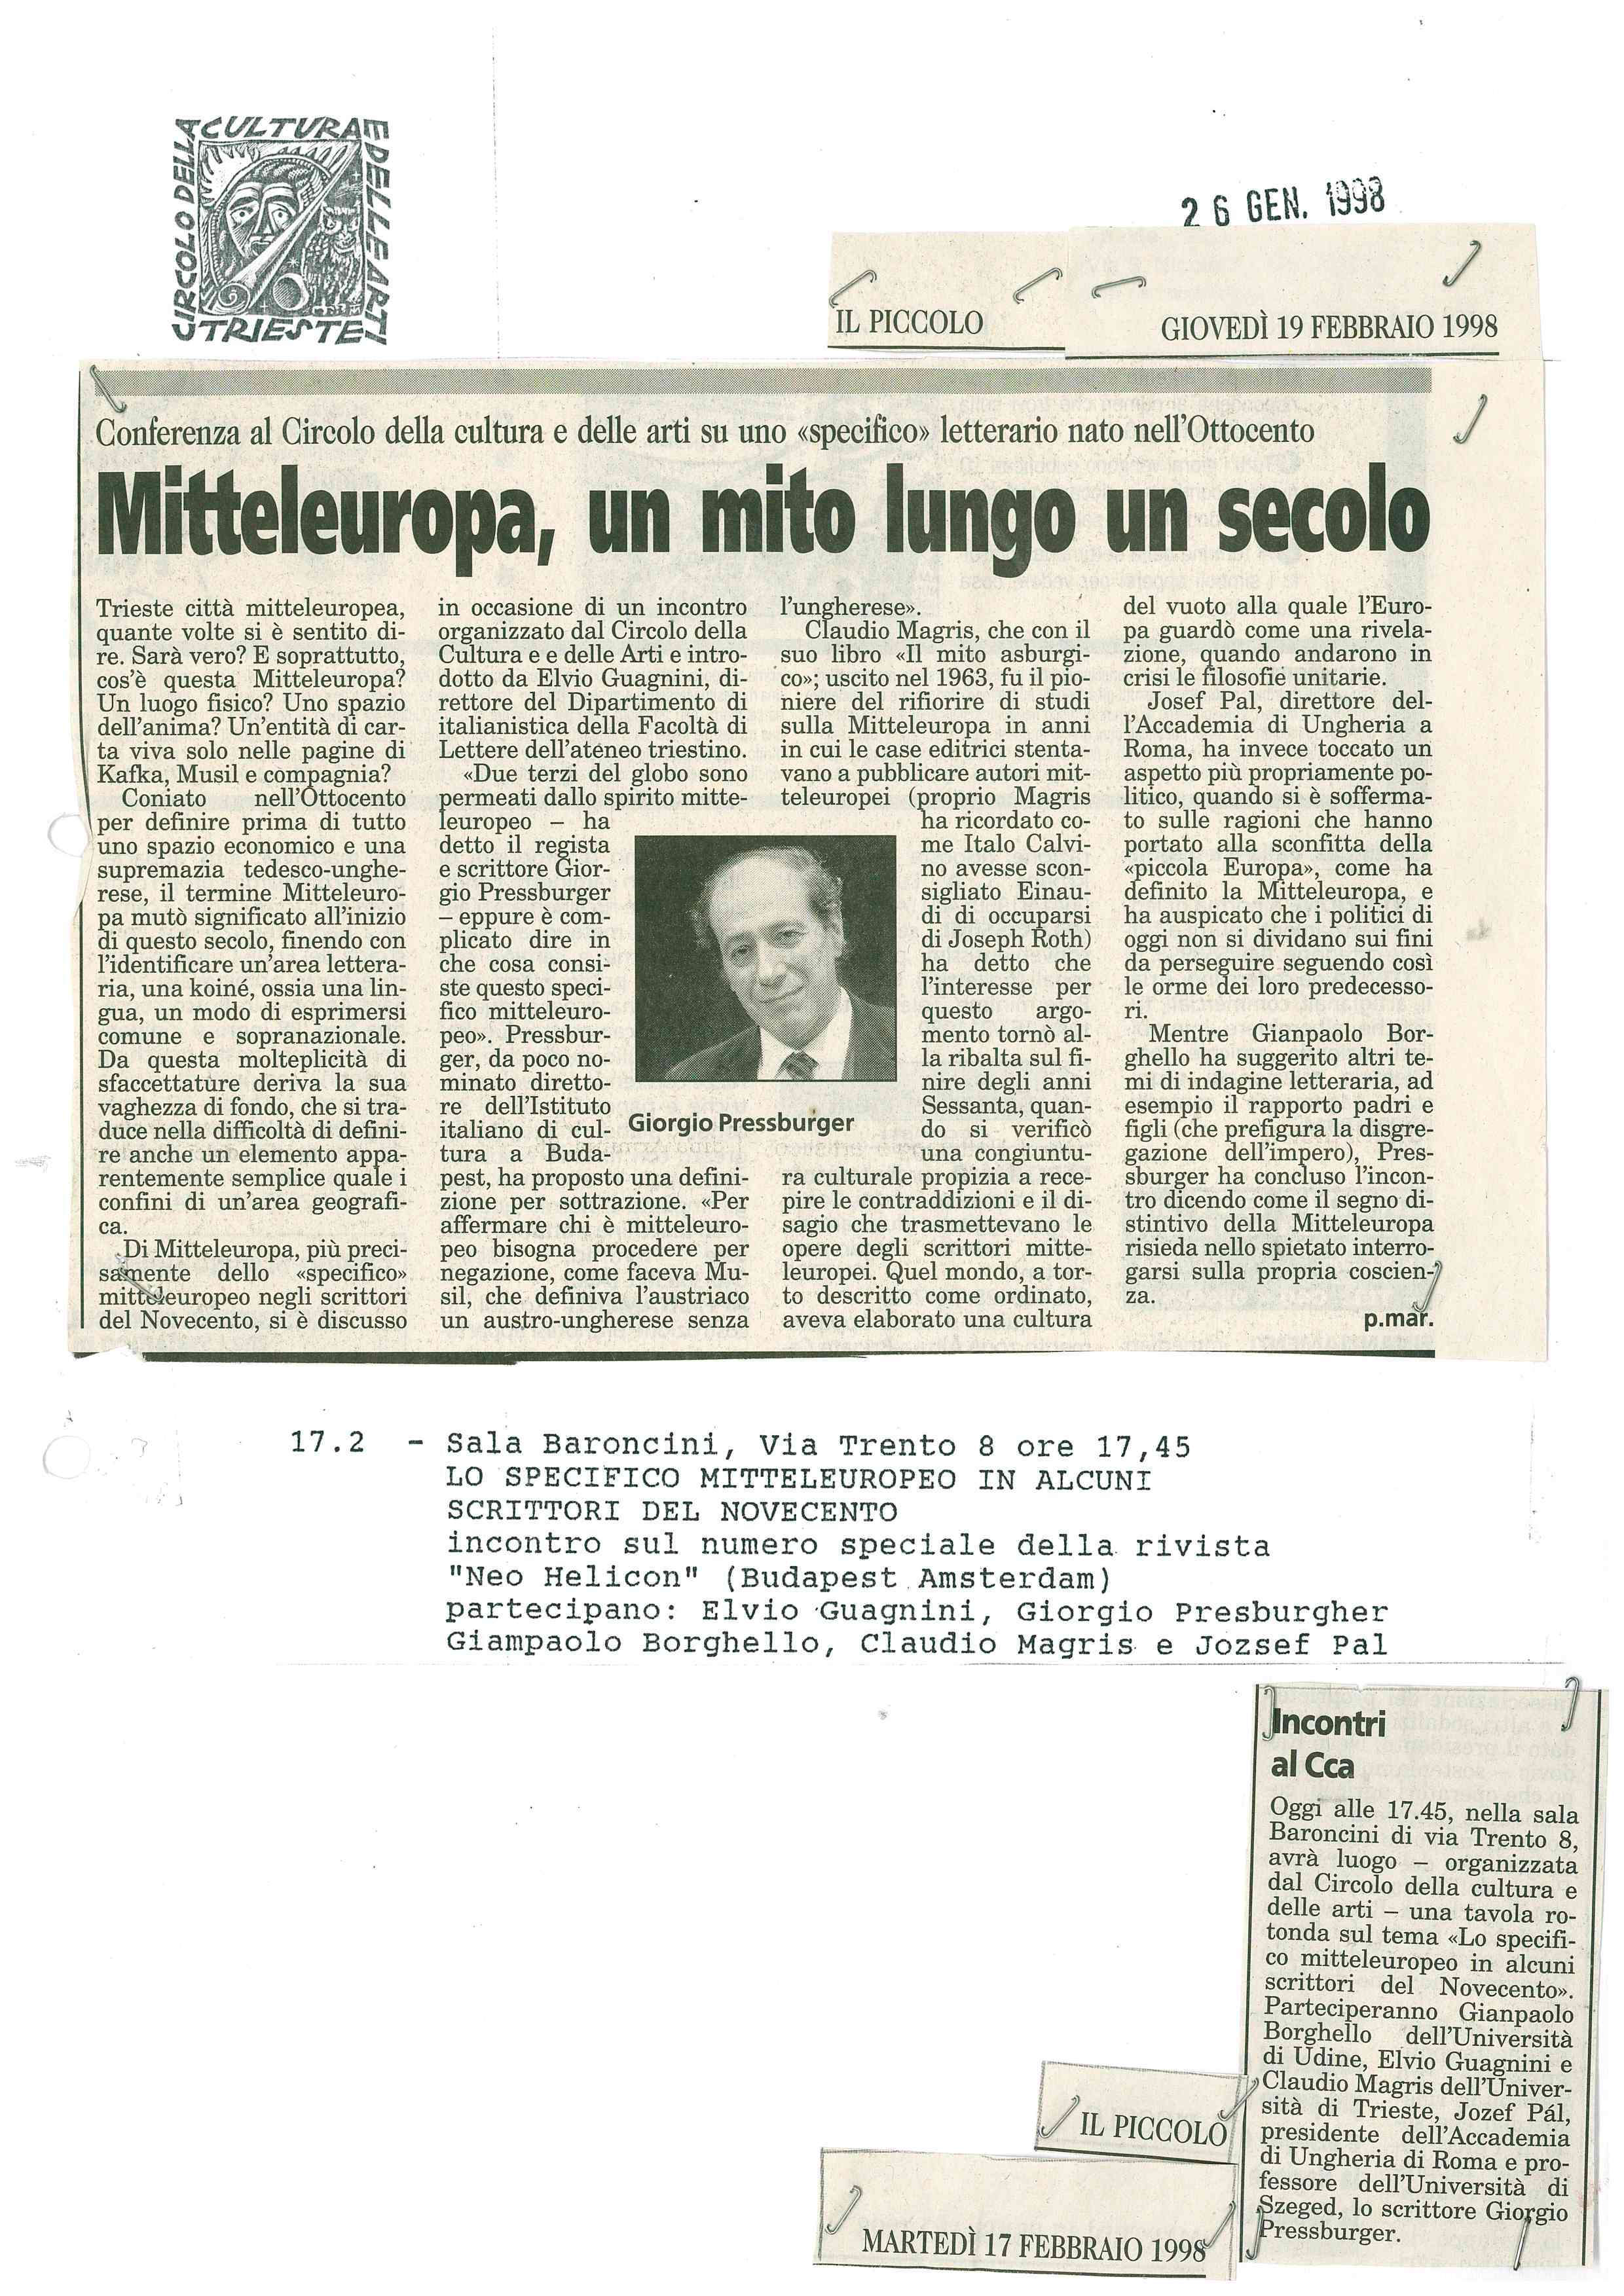 1998 02 17 invito conferenza Borghello